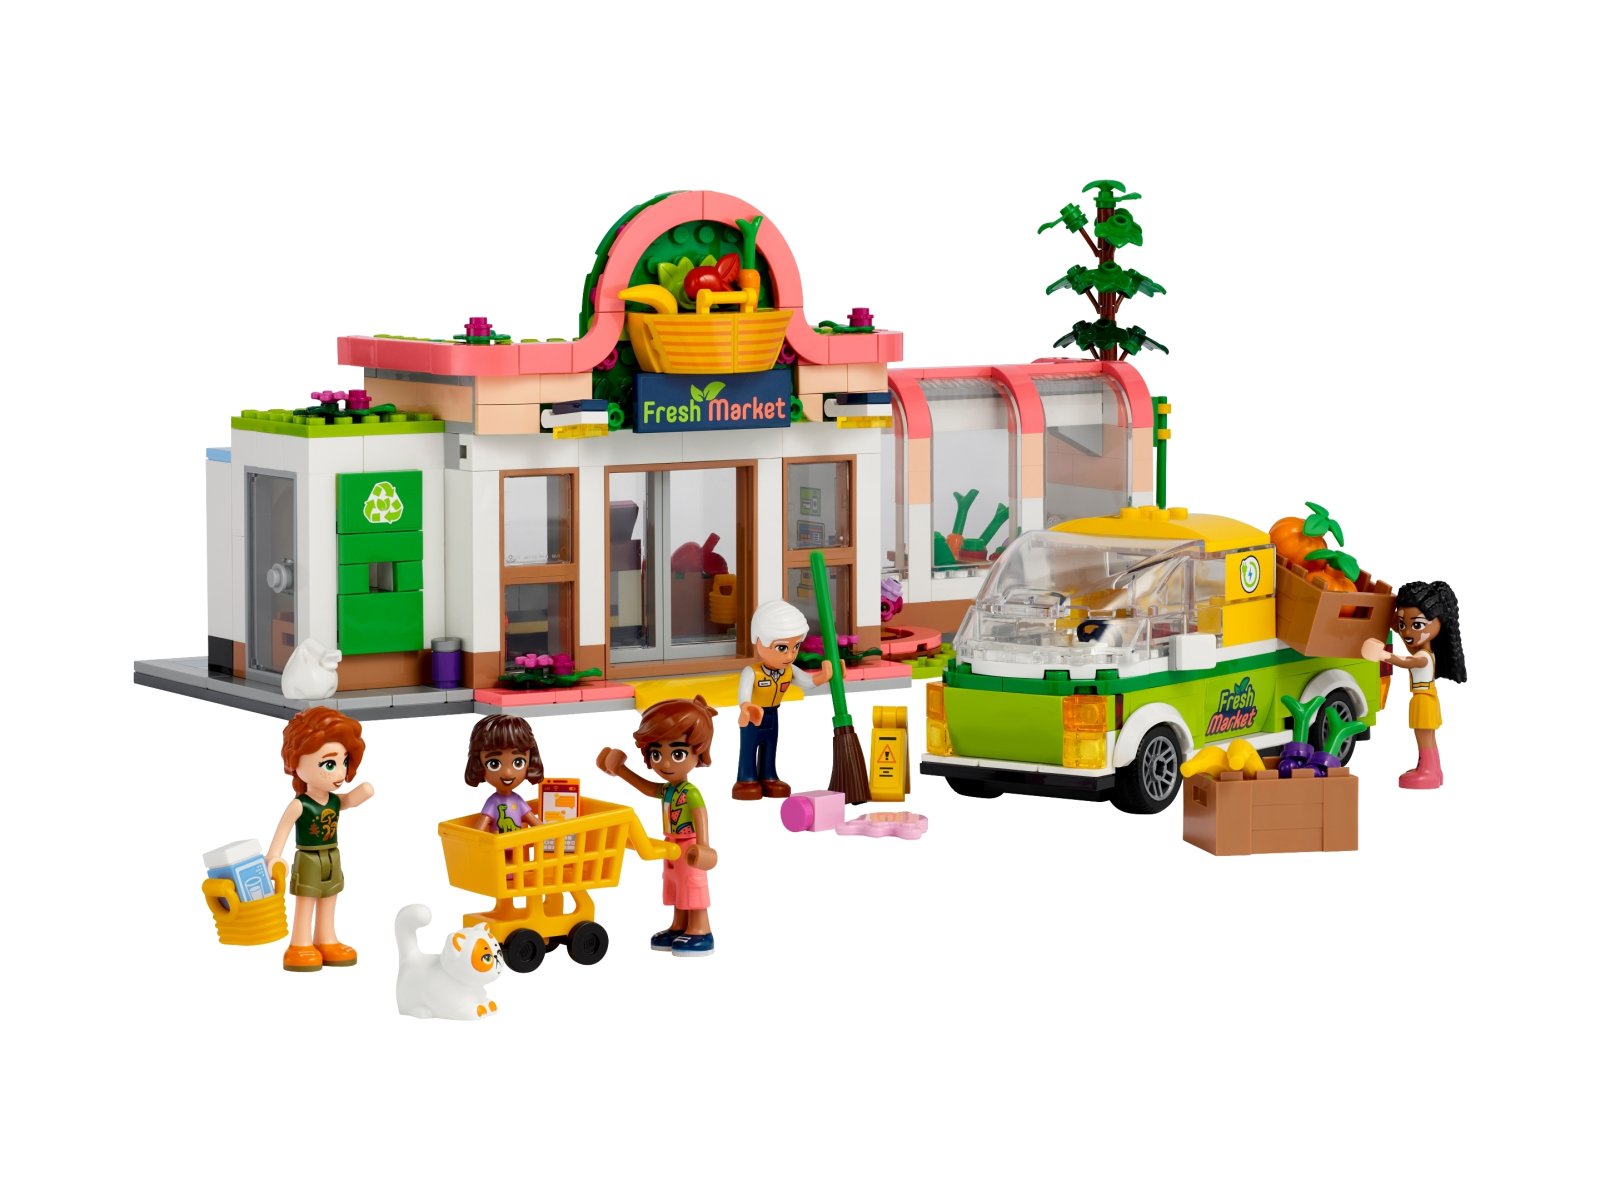 LEGO 41729 Friends Sklep spożywczy z żywnością ekologiczną